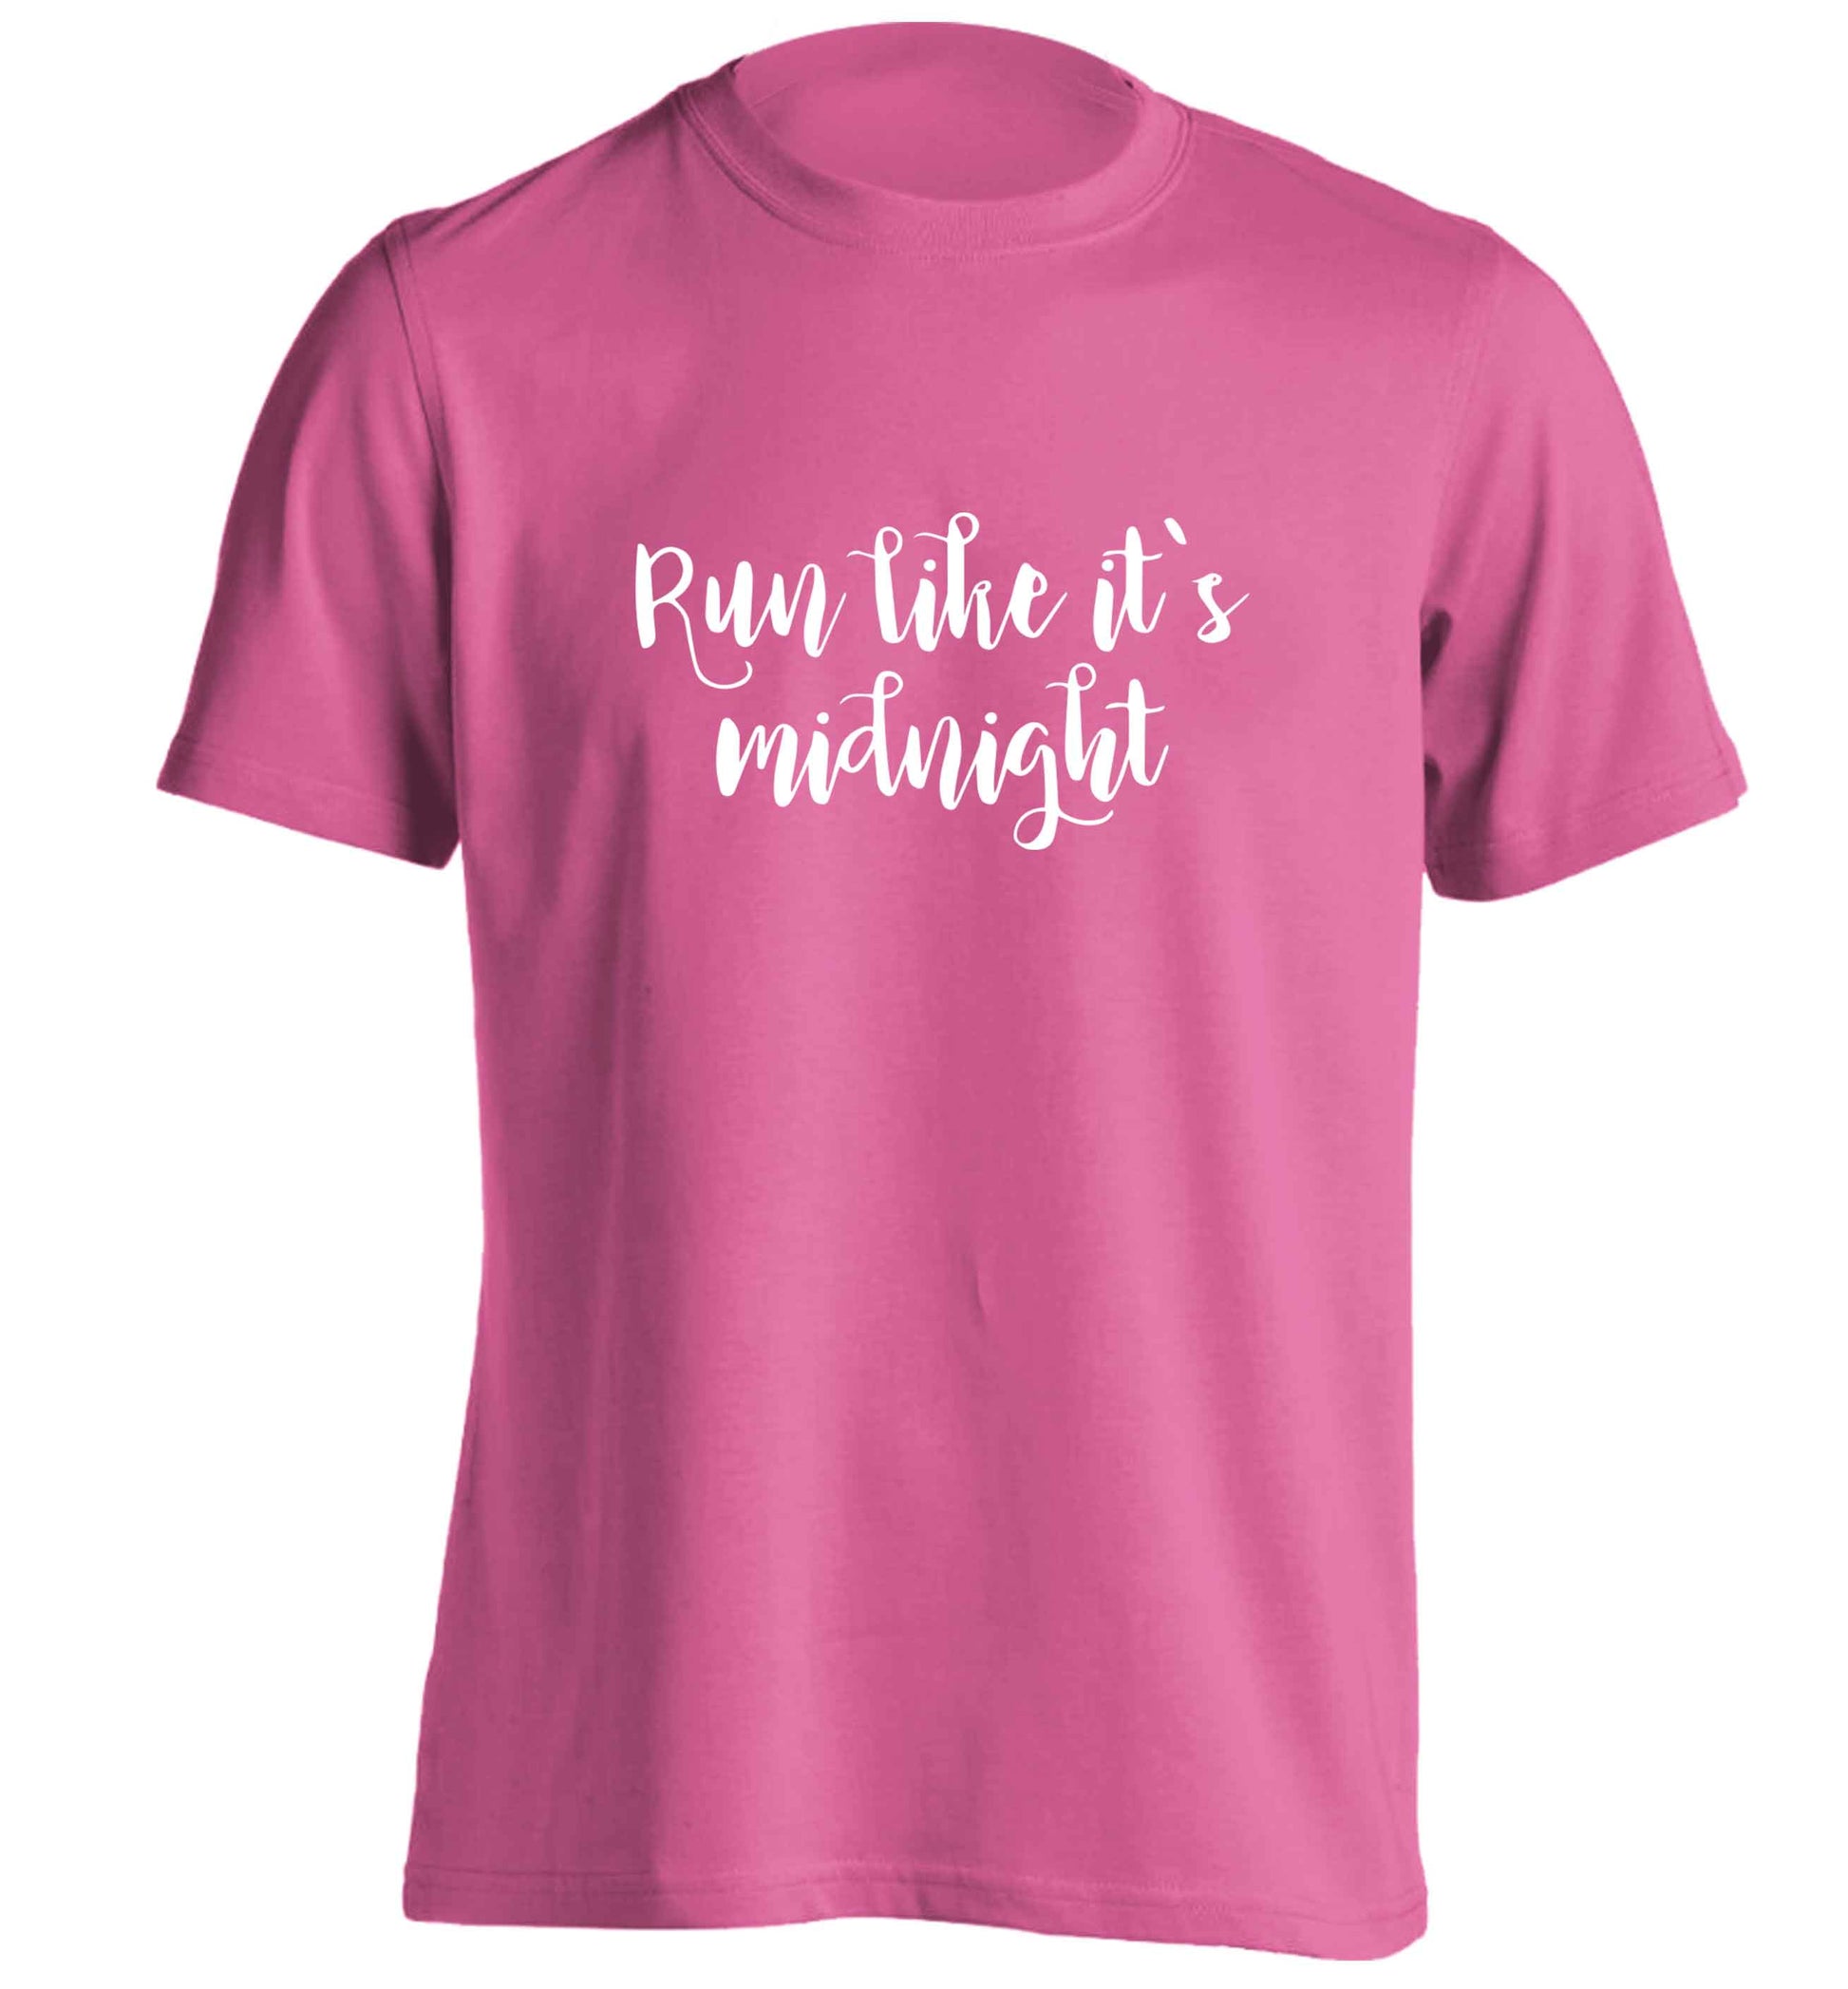 Run like it's midnight adults unisex pink Tshirt 2XL